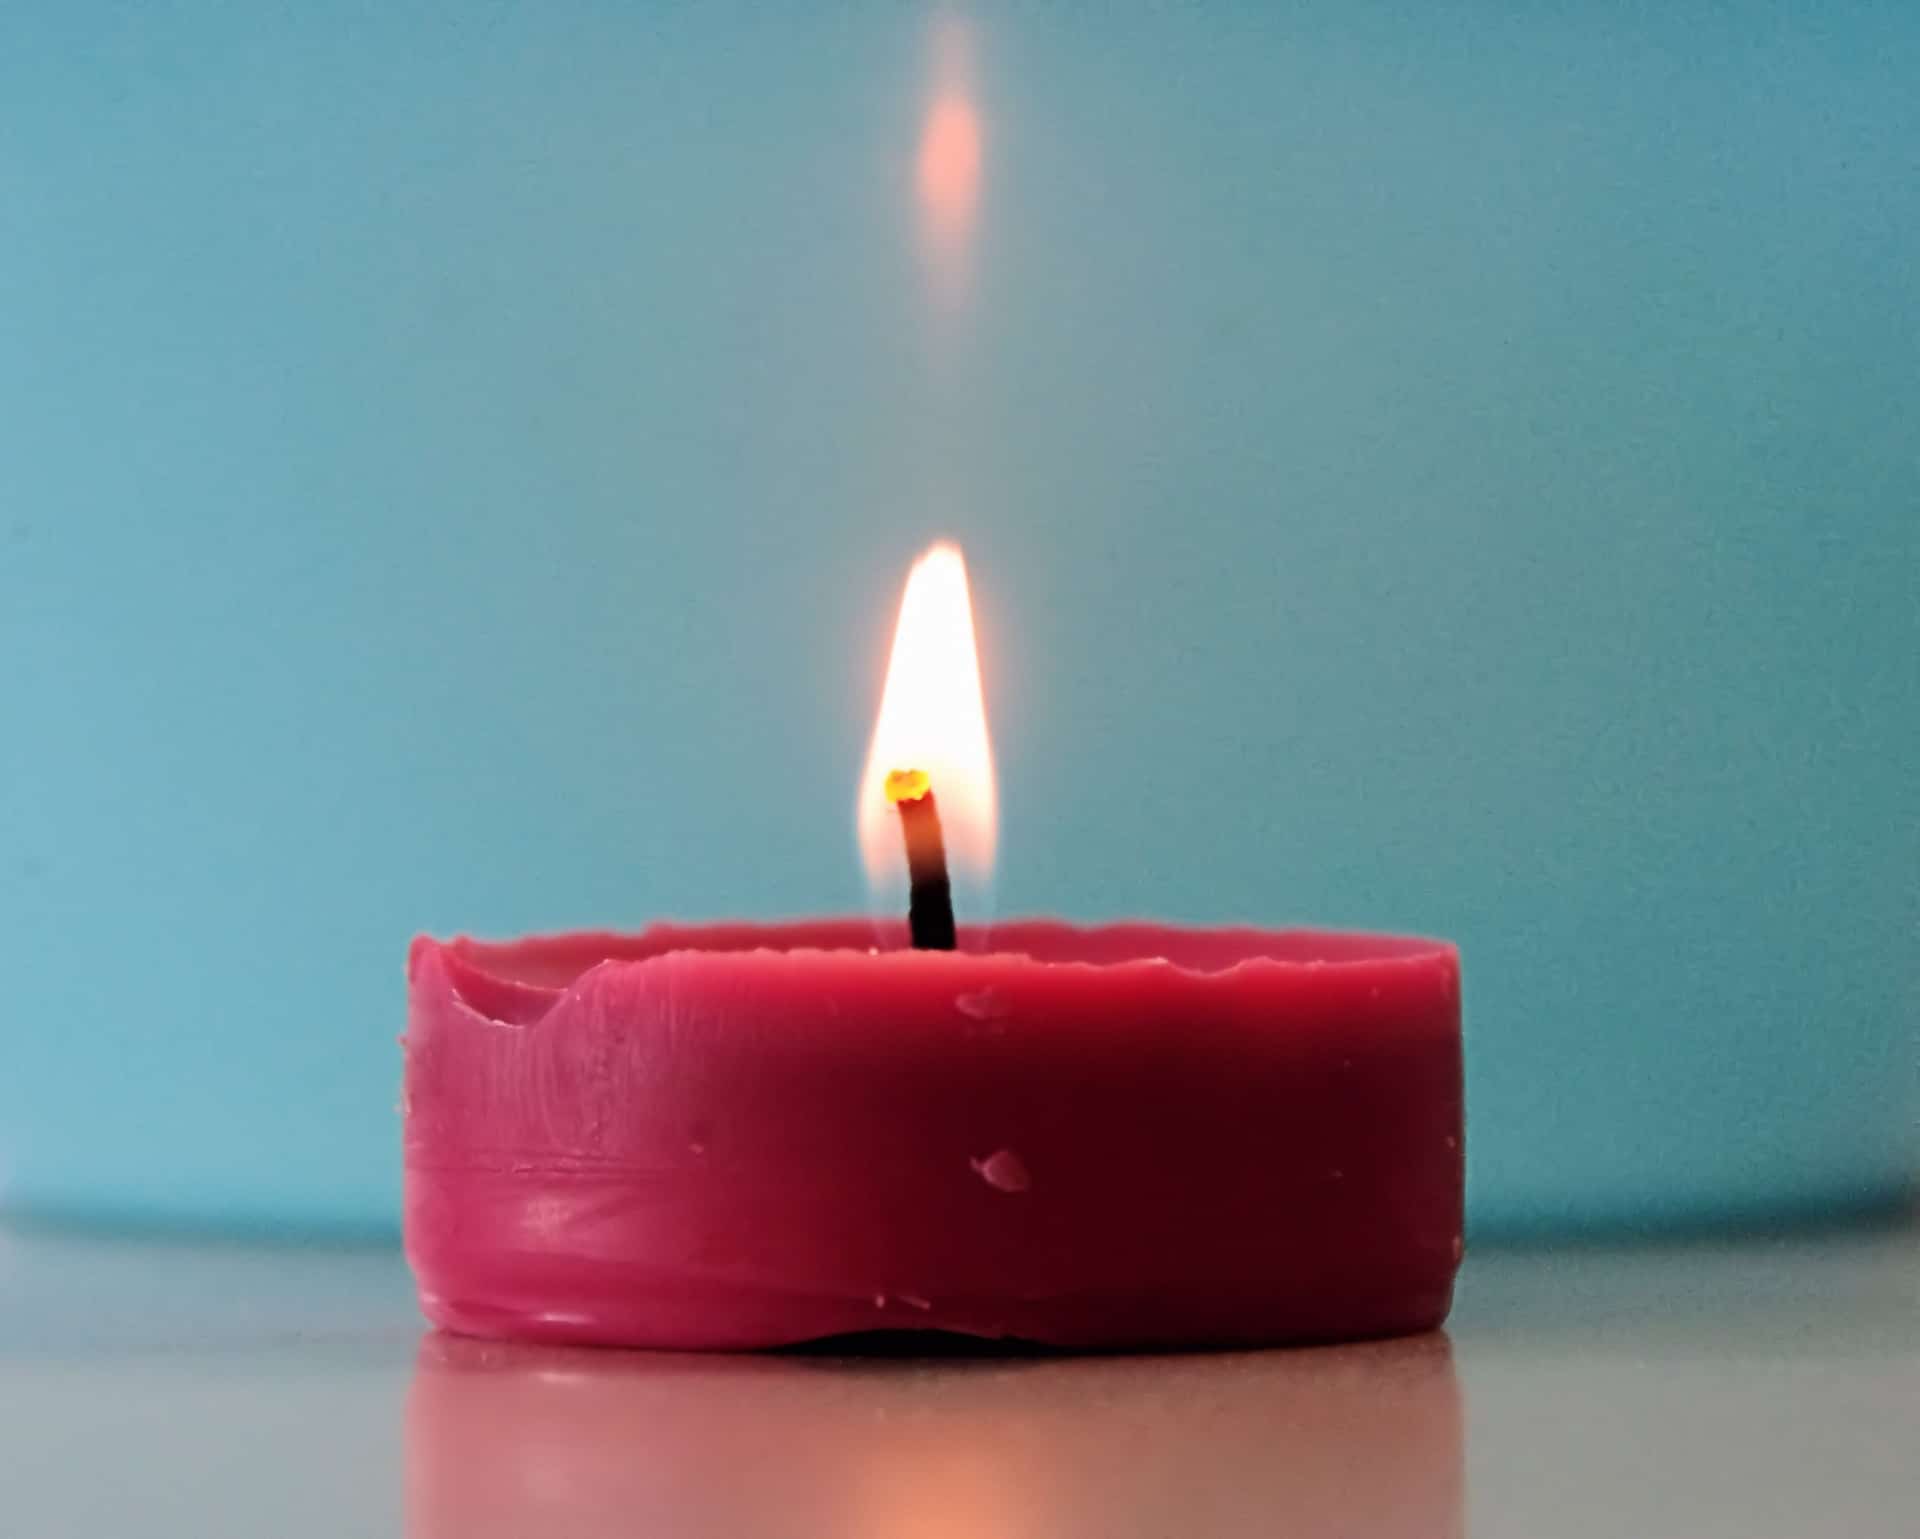 Ljubavno proricanje sa voskom crvene sveće – značenje simbola